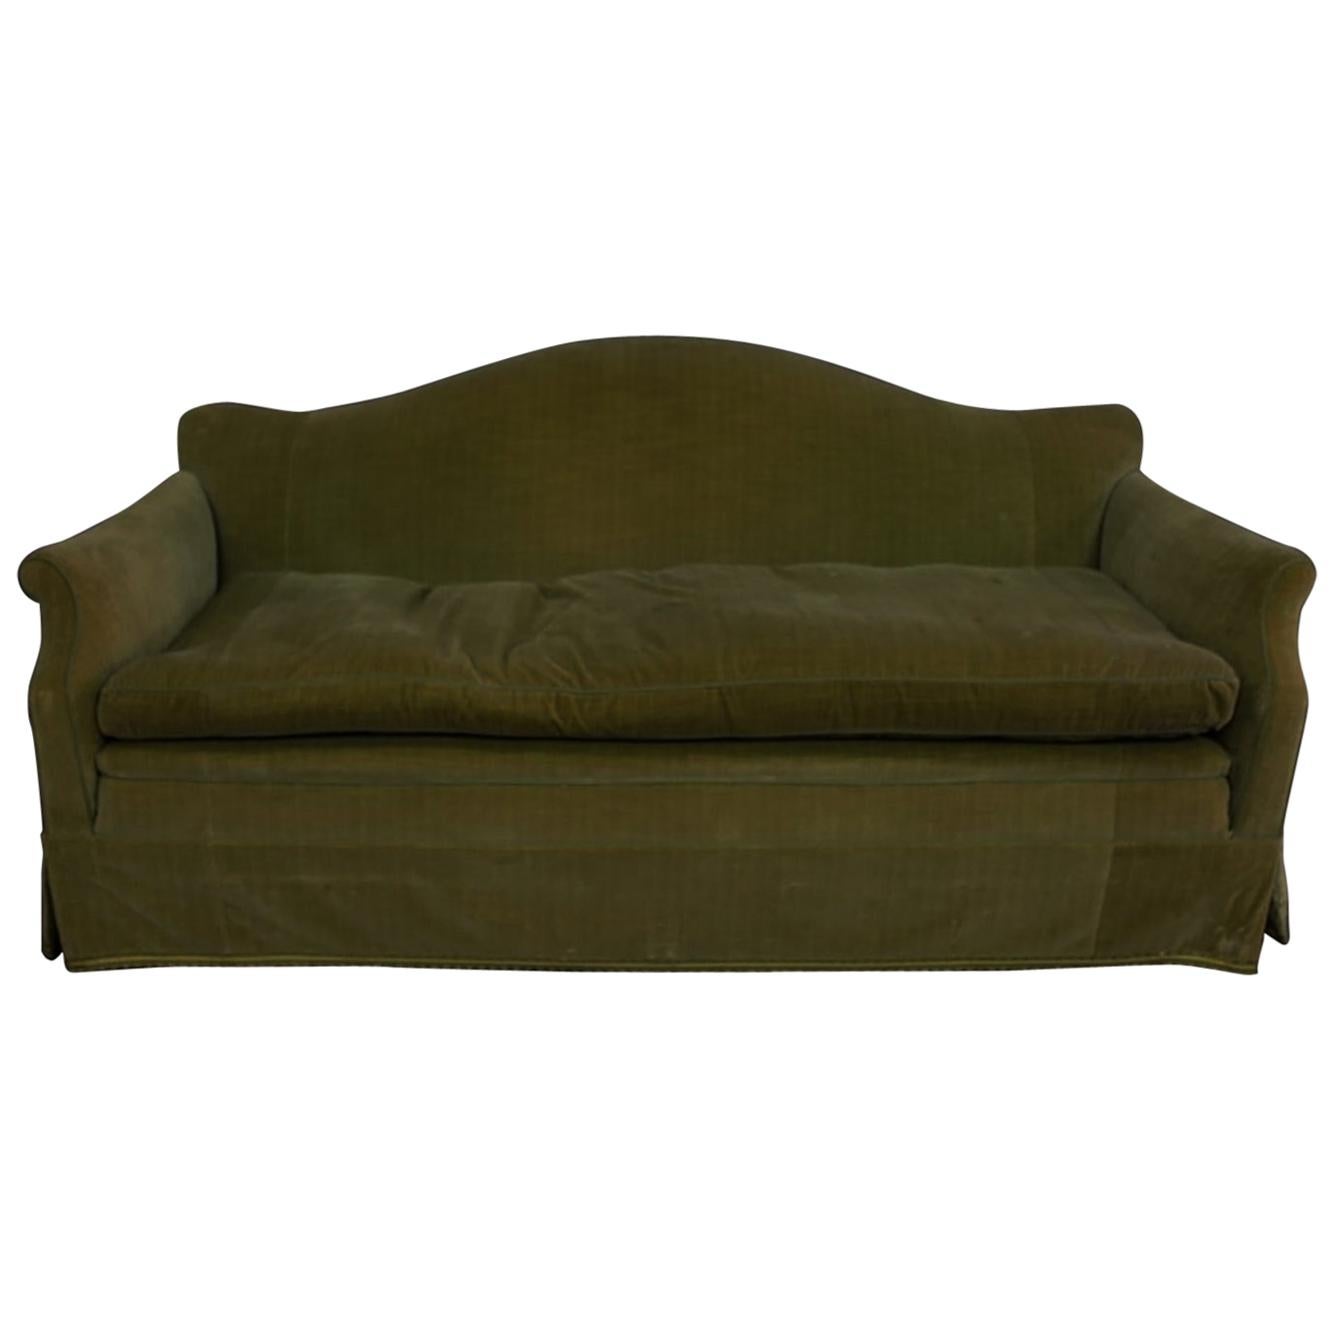 Classic, elegant tight-back, single loose seat cushion English Camelback Sofa